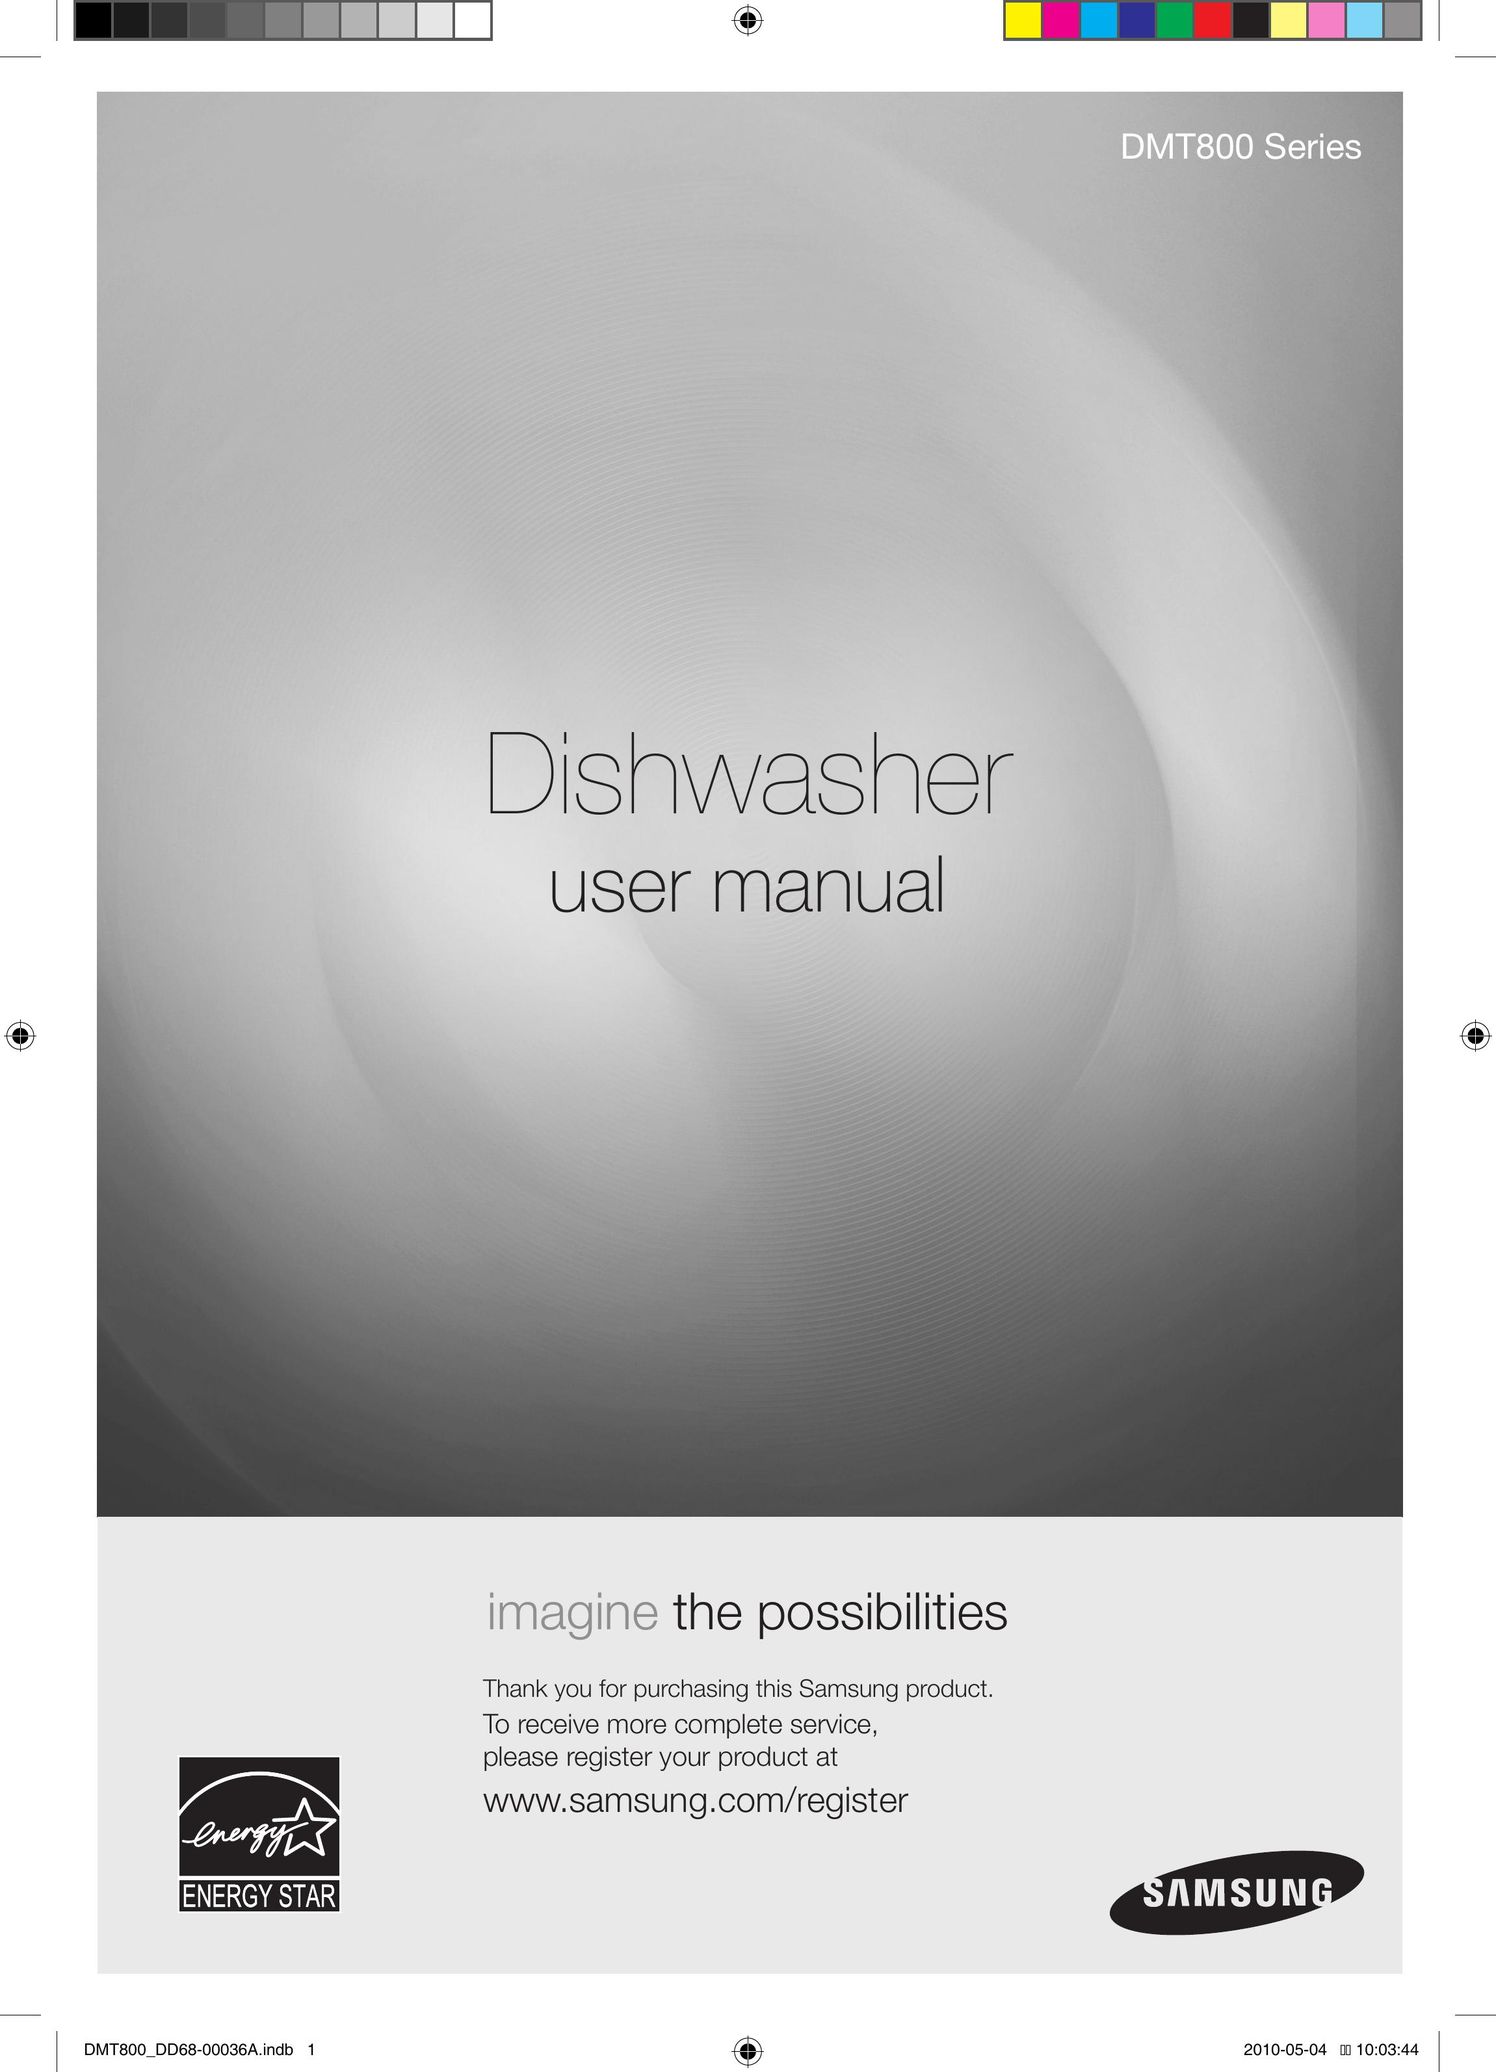 Samsung DMT800 Dishwasher User Manual